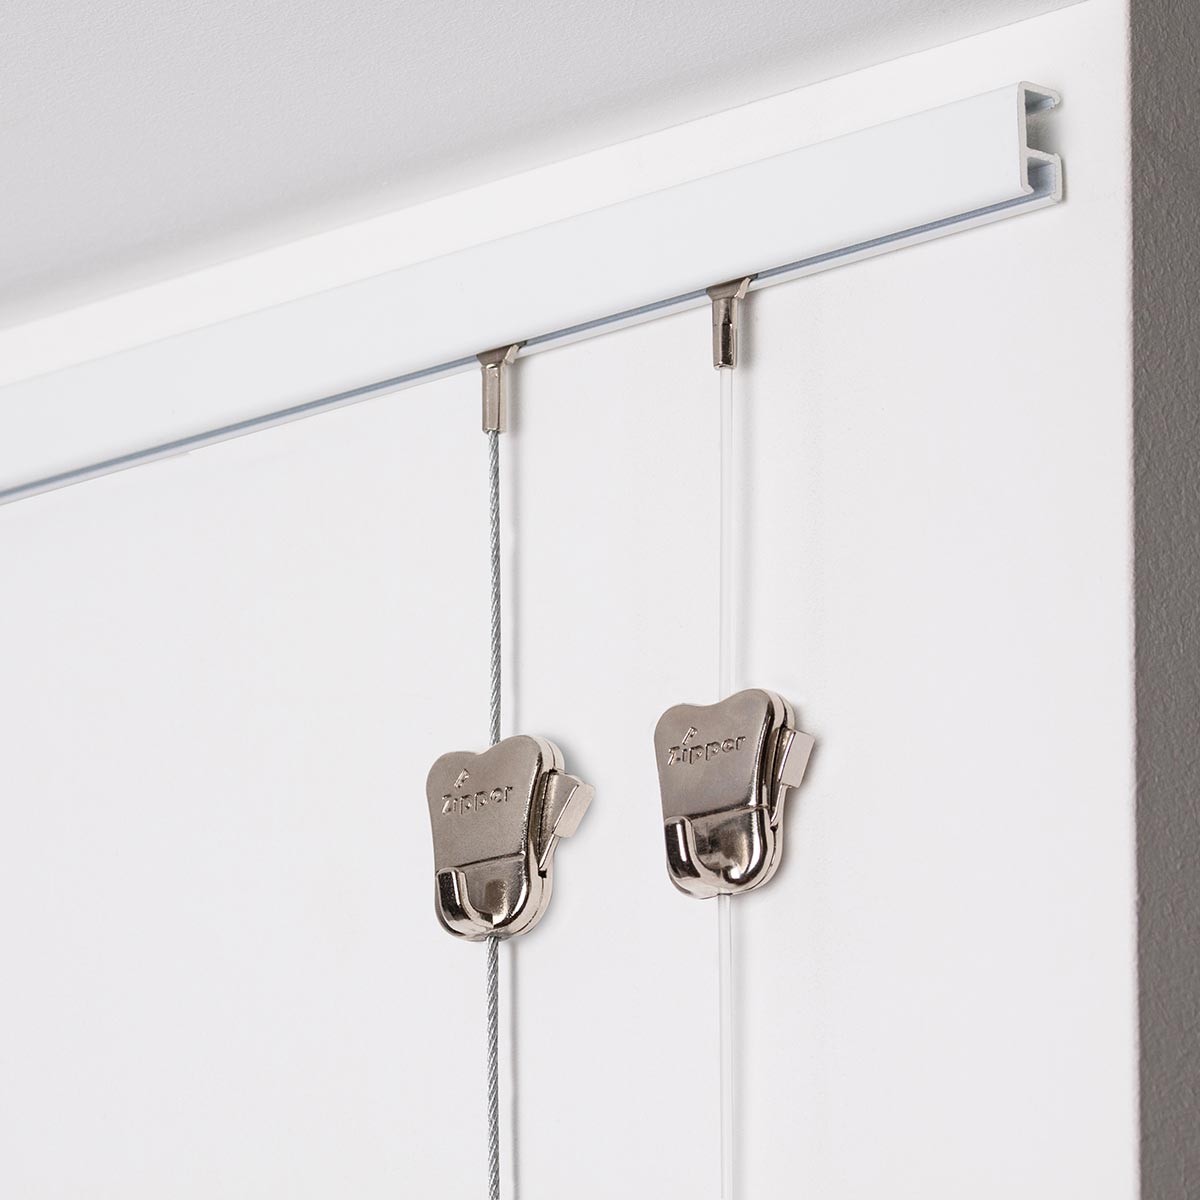 6 Feet 6 Inches 2 METER Blanco clip-rail galería sistema para colgar cuadros con ganchos montado en la pared Stas cliprail negro blanco plata nogal madera incluido fijaciones 